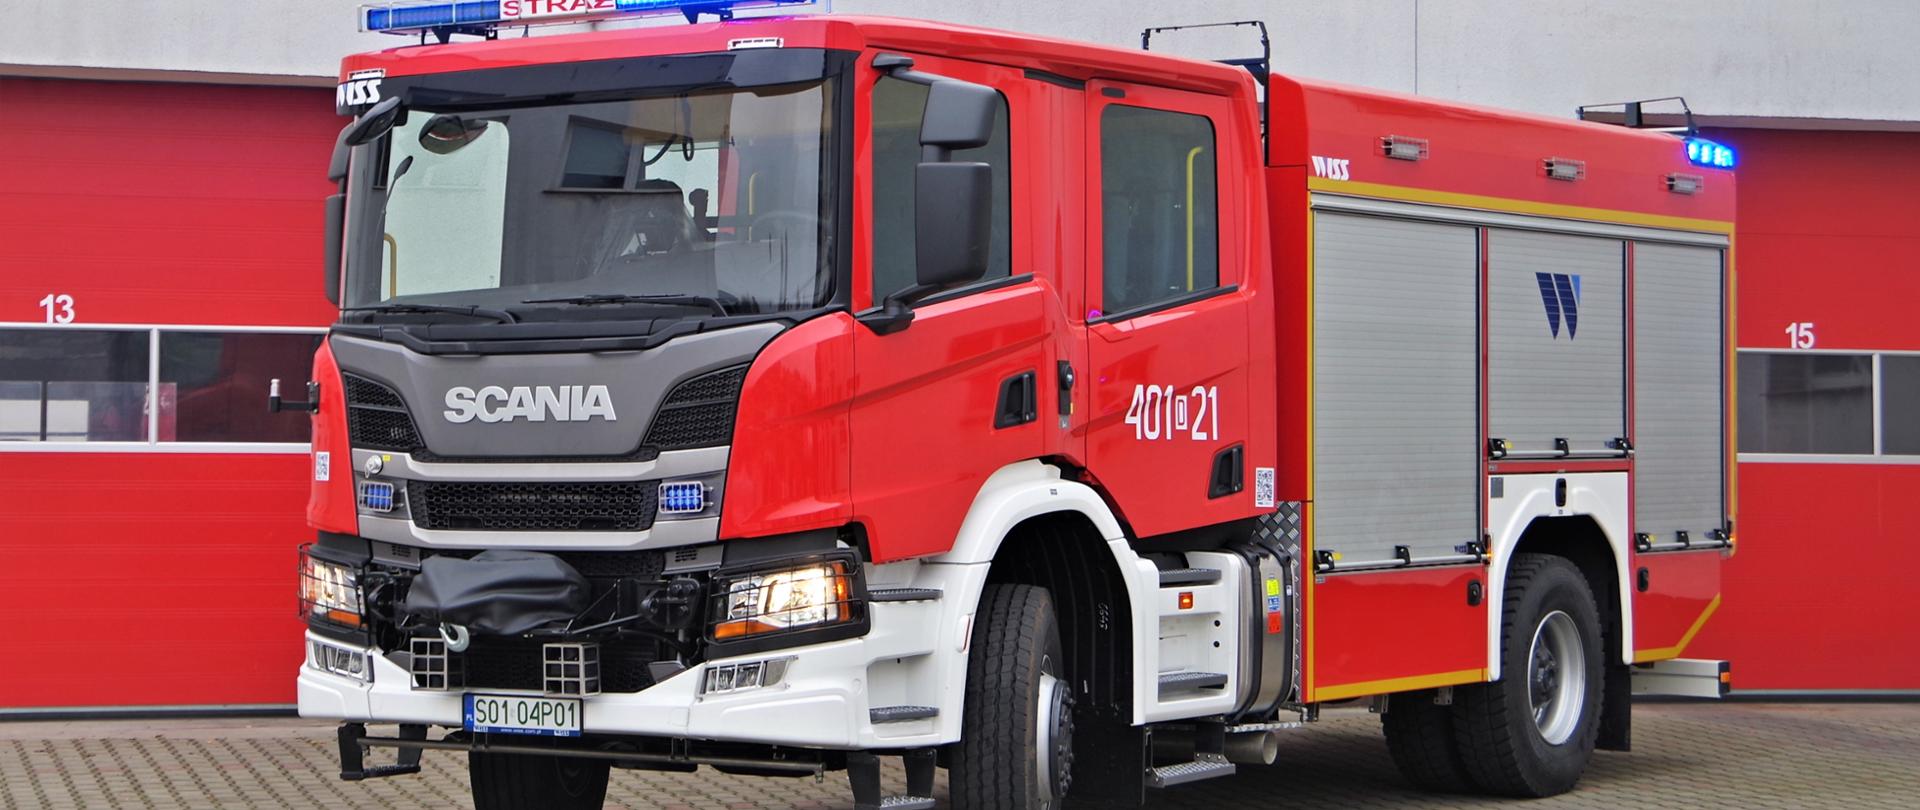 Średni samochód ratowniczo-gaśniczy na podwoziu Scania
GBA 3/24 Scania
Ilość miejsc: 6
Rok produkcji: 2019
Napęd: 4x4
Pojemność zbiornika 3000 l
